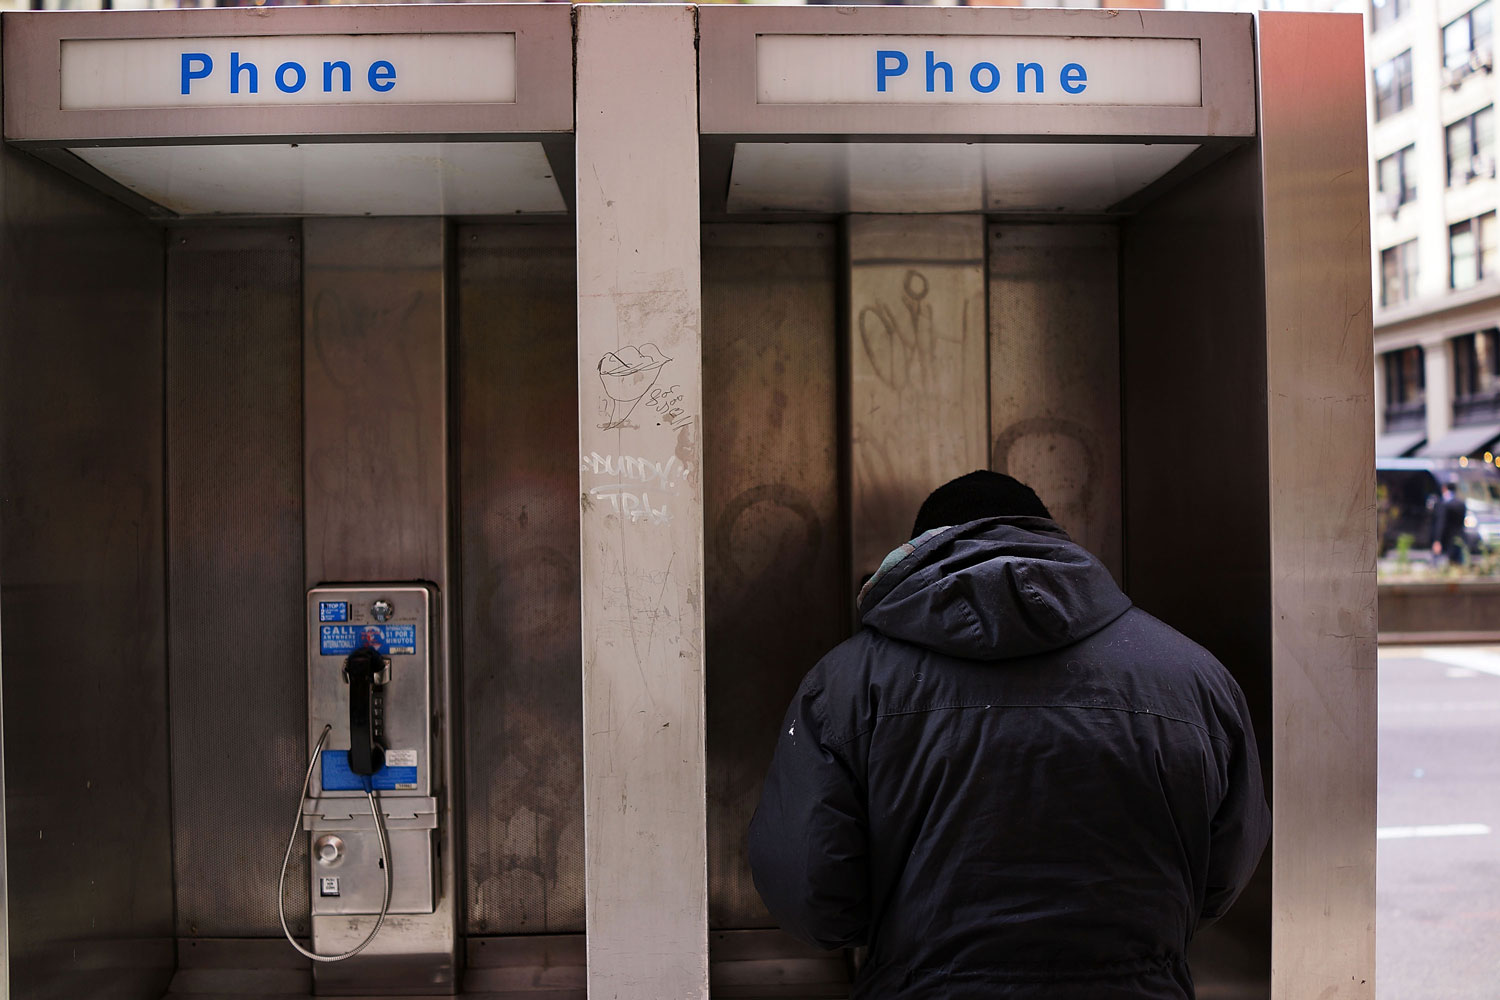 Google quiere transformar las cabinas telefónicas de Nueva York en puntos WiFi gratuitos